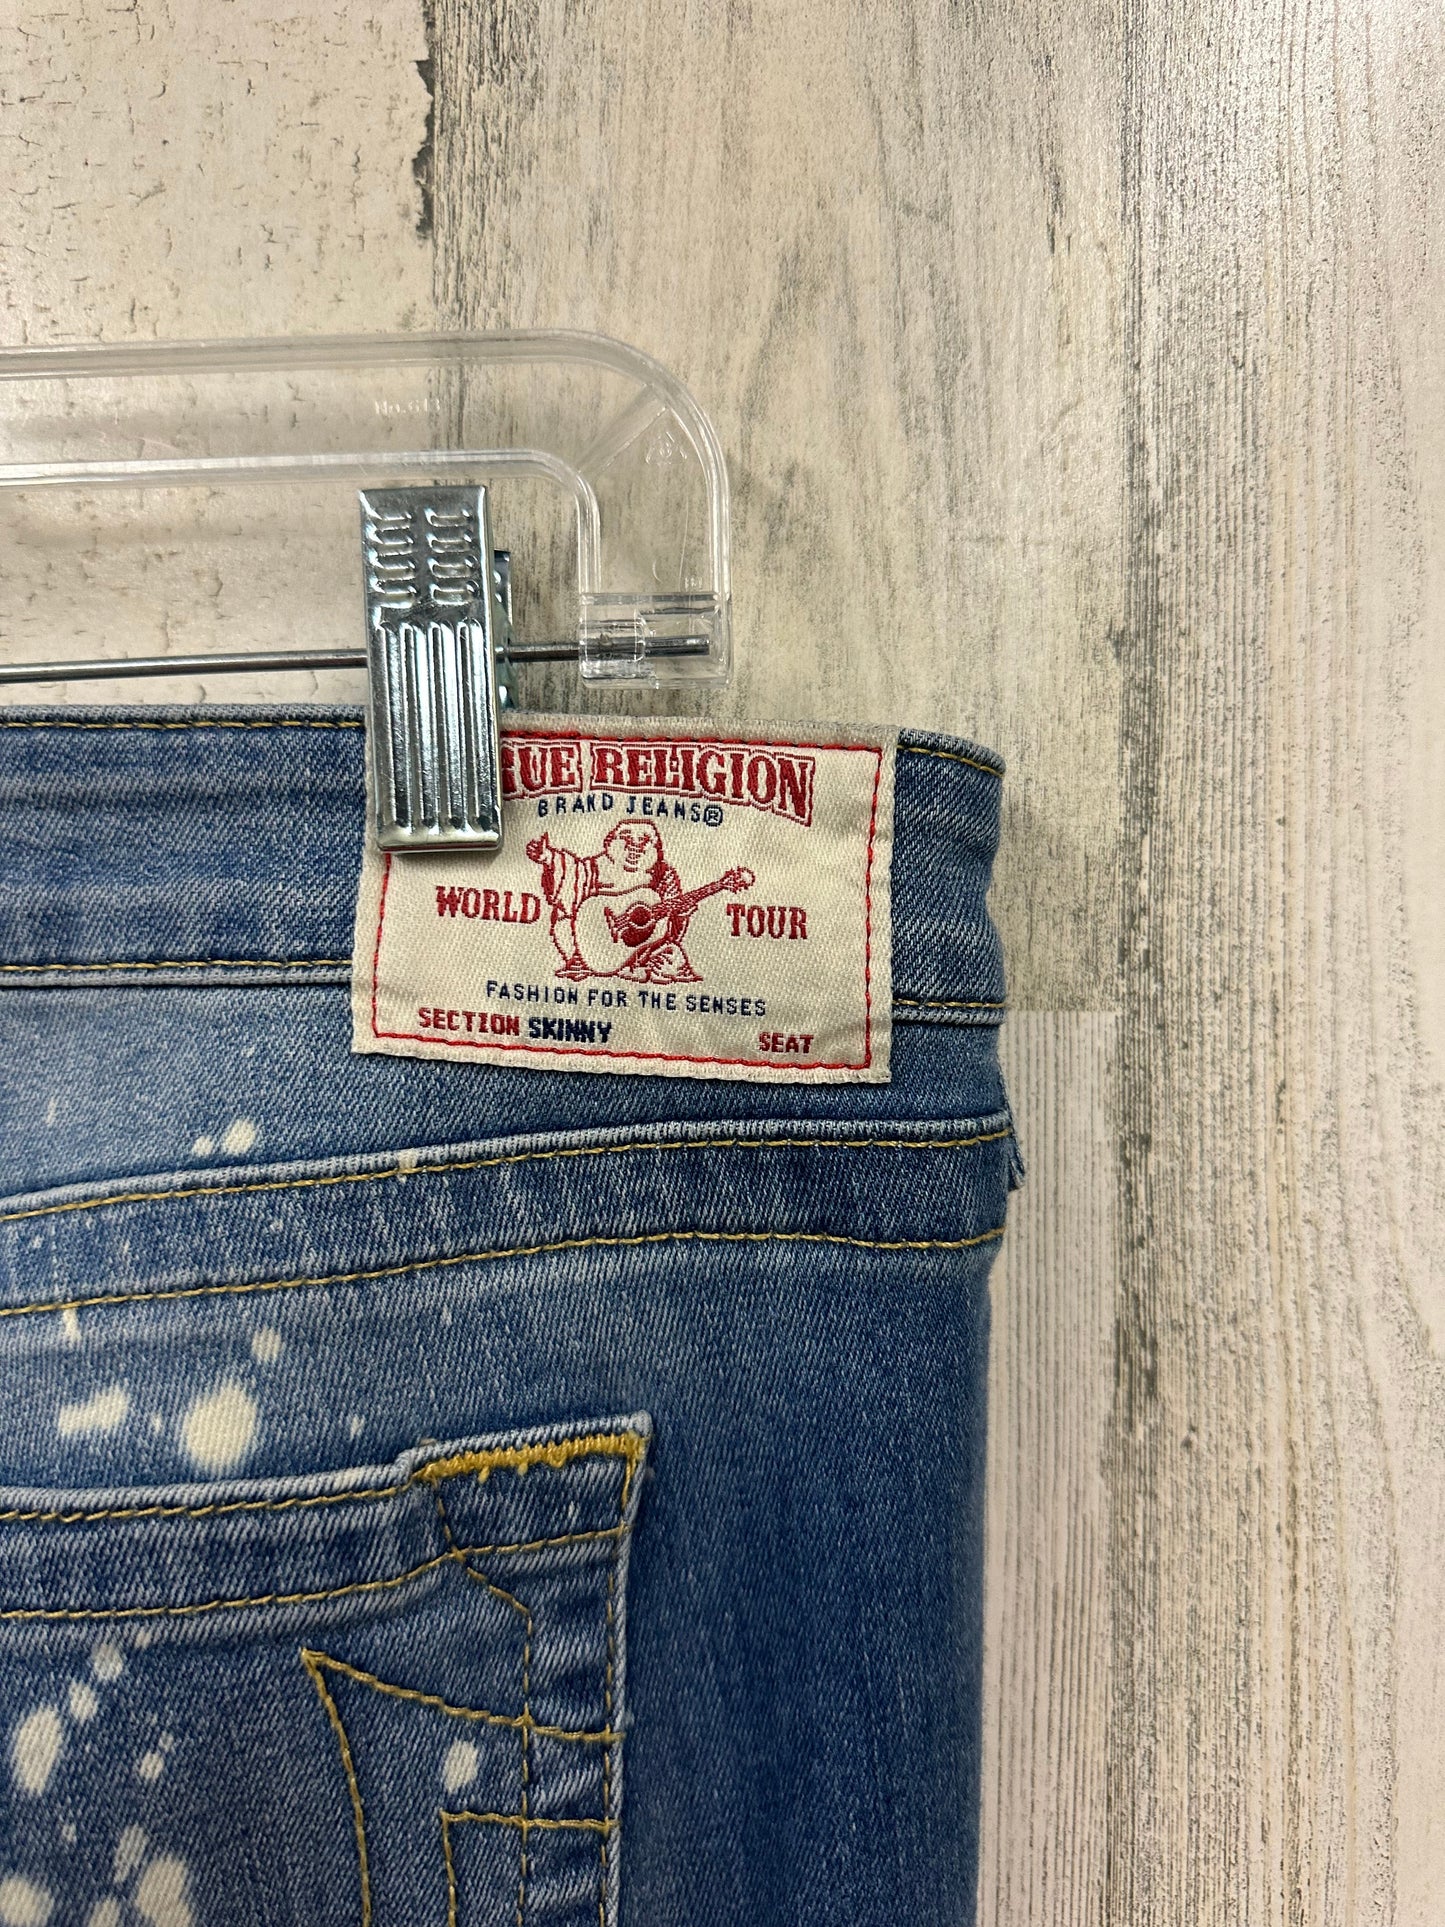 Jeans Skinny By True Religion  Size: 16